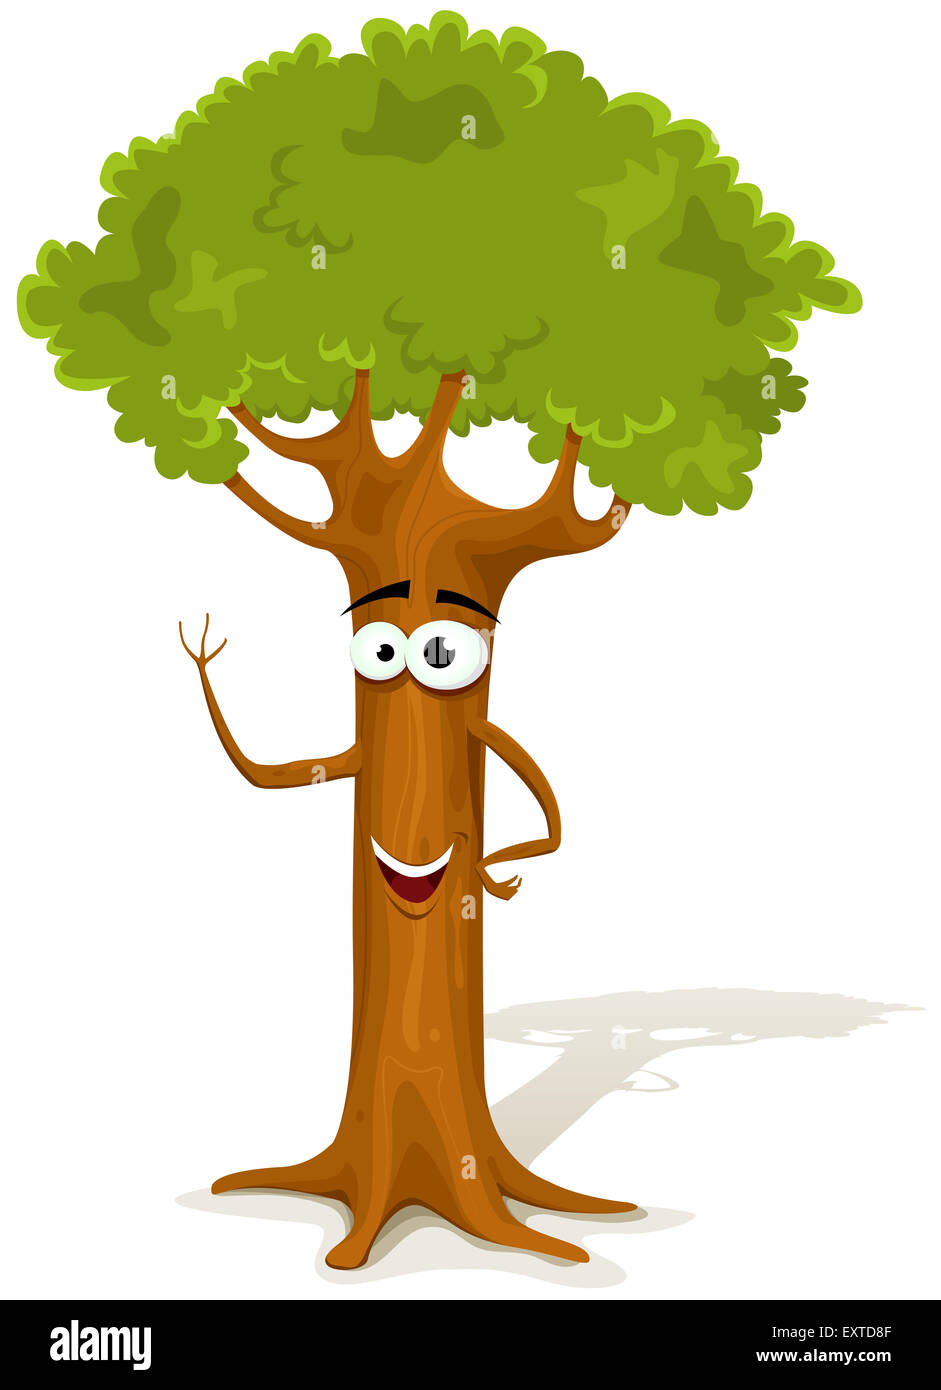 Abbildung Eines Lustigen Cartoon Fruhling Oder Sommer Glucklich Baum Charakter Frohlich Und Einladend Isoliert Auf Weissem Hintergrund Stockfotografie Alamy